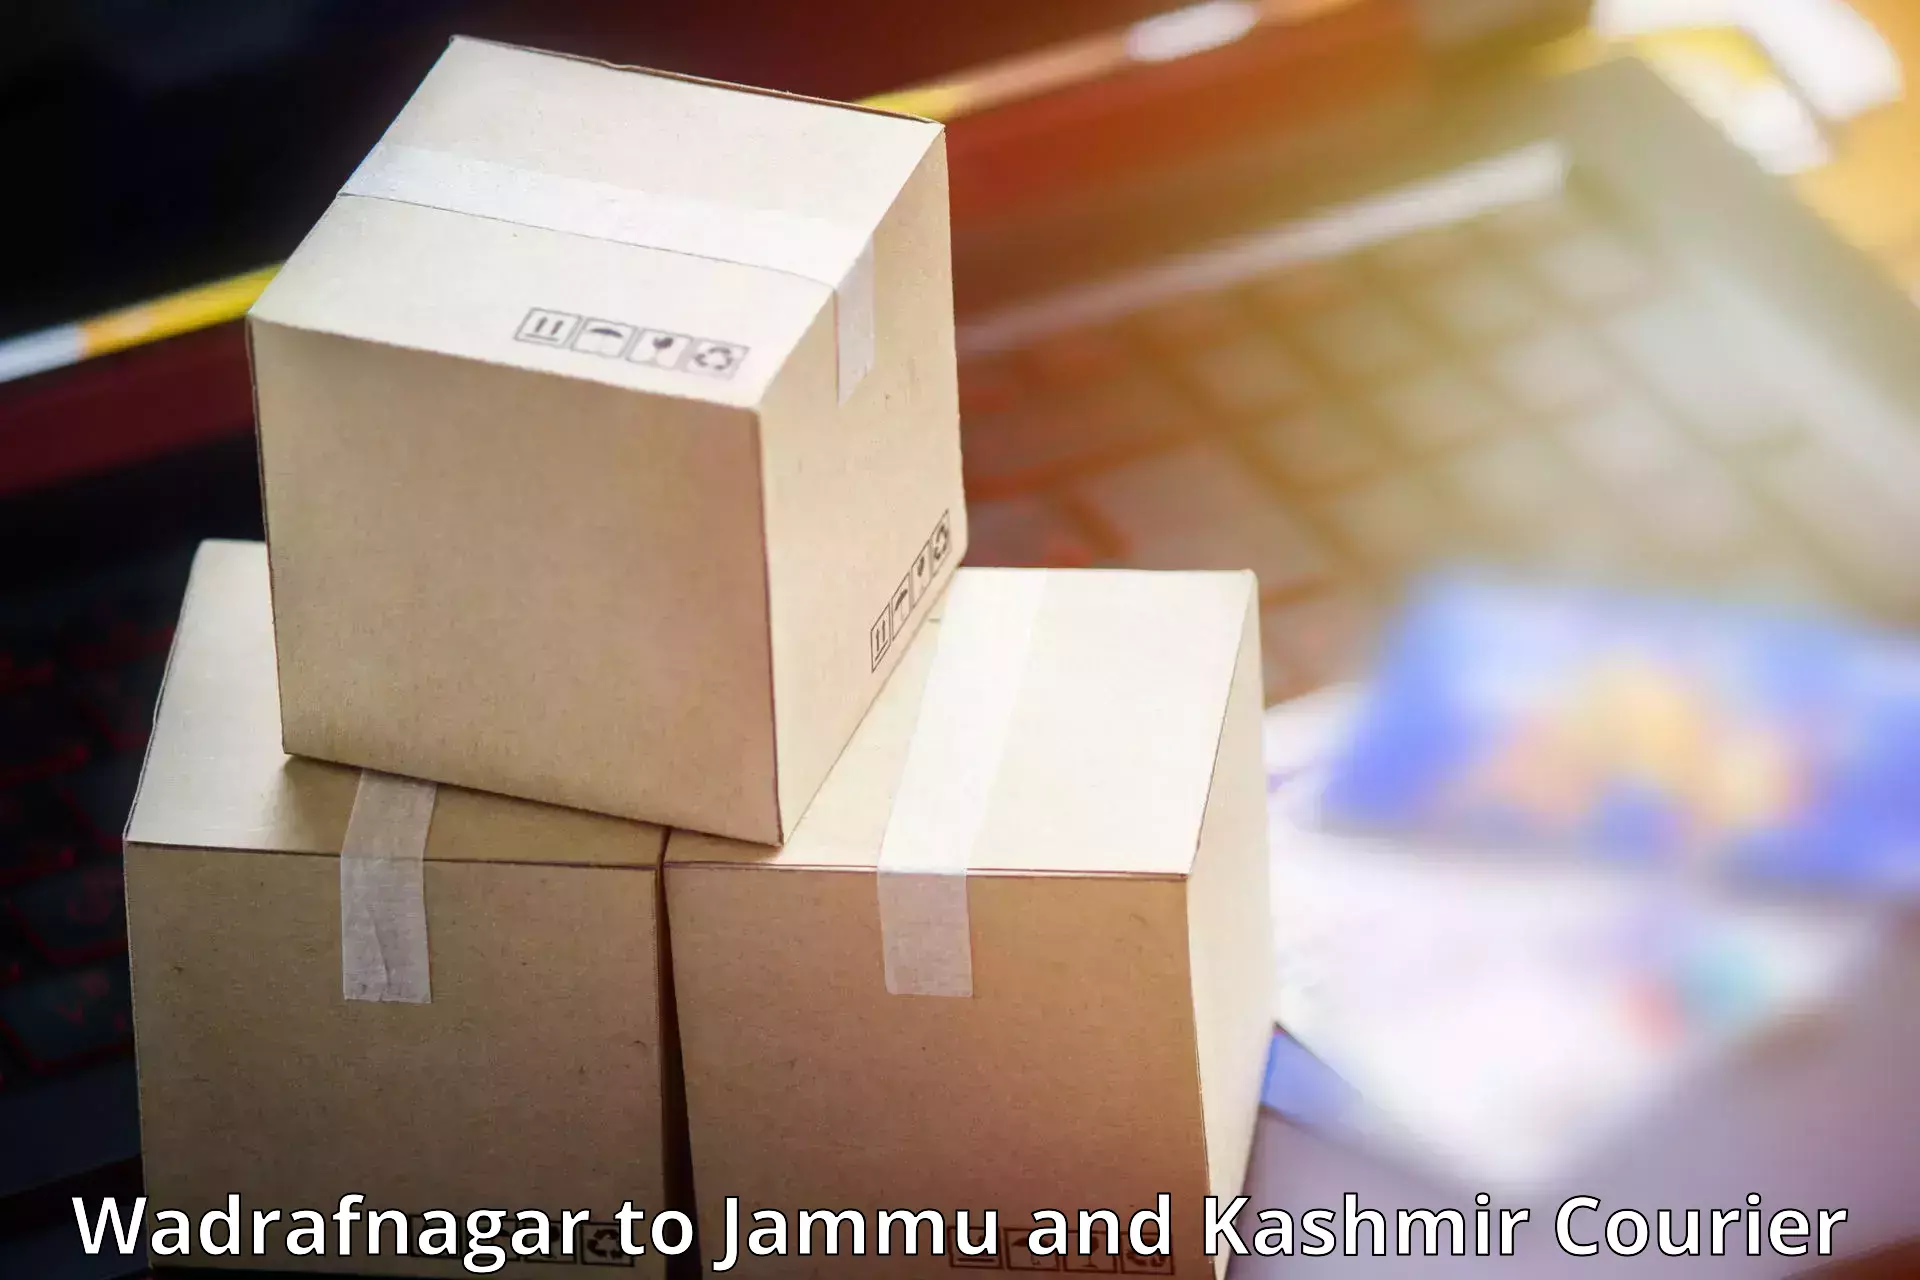 Simplified shipping solutions Wadrafnagar to Leh